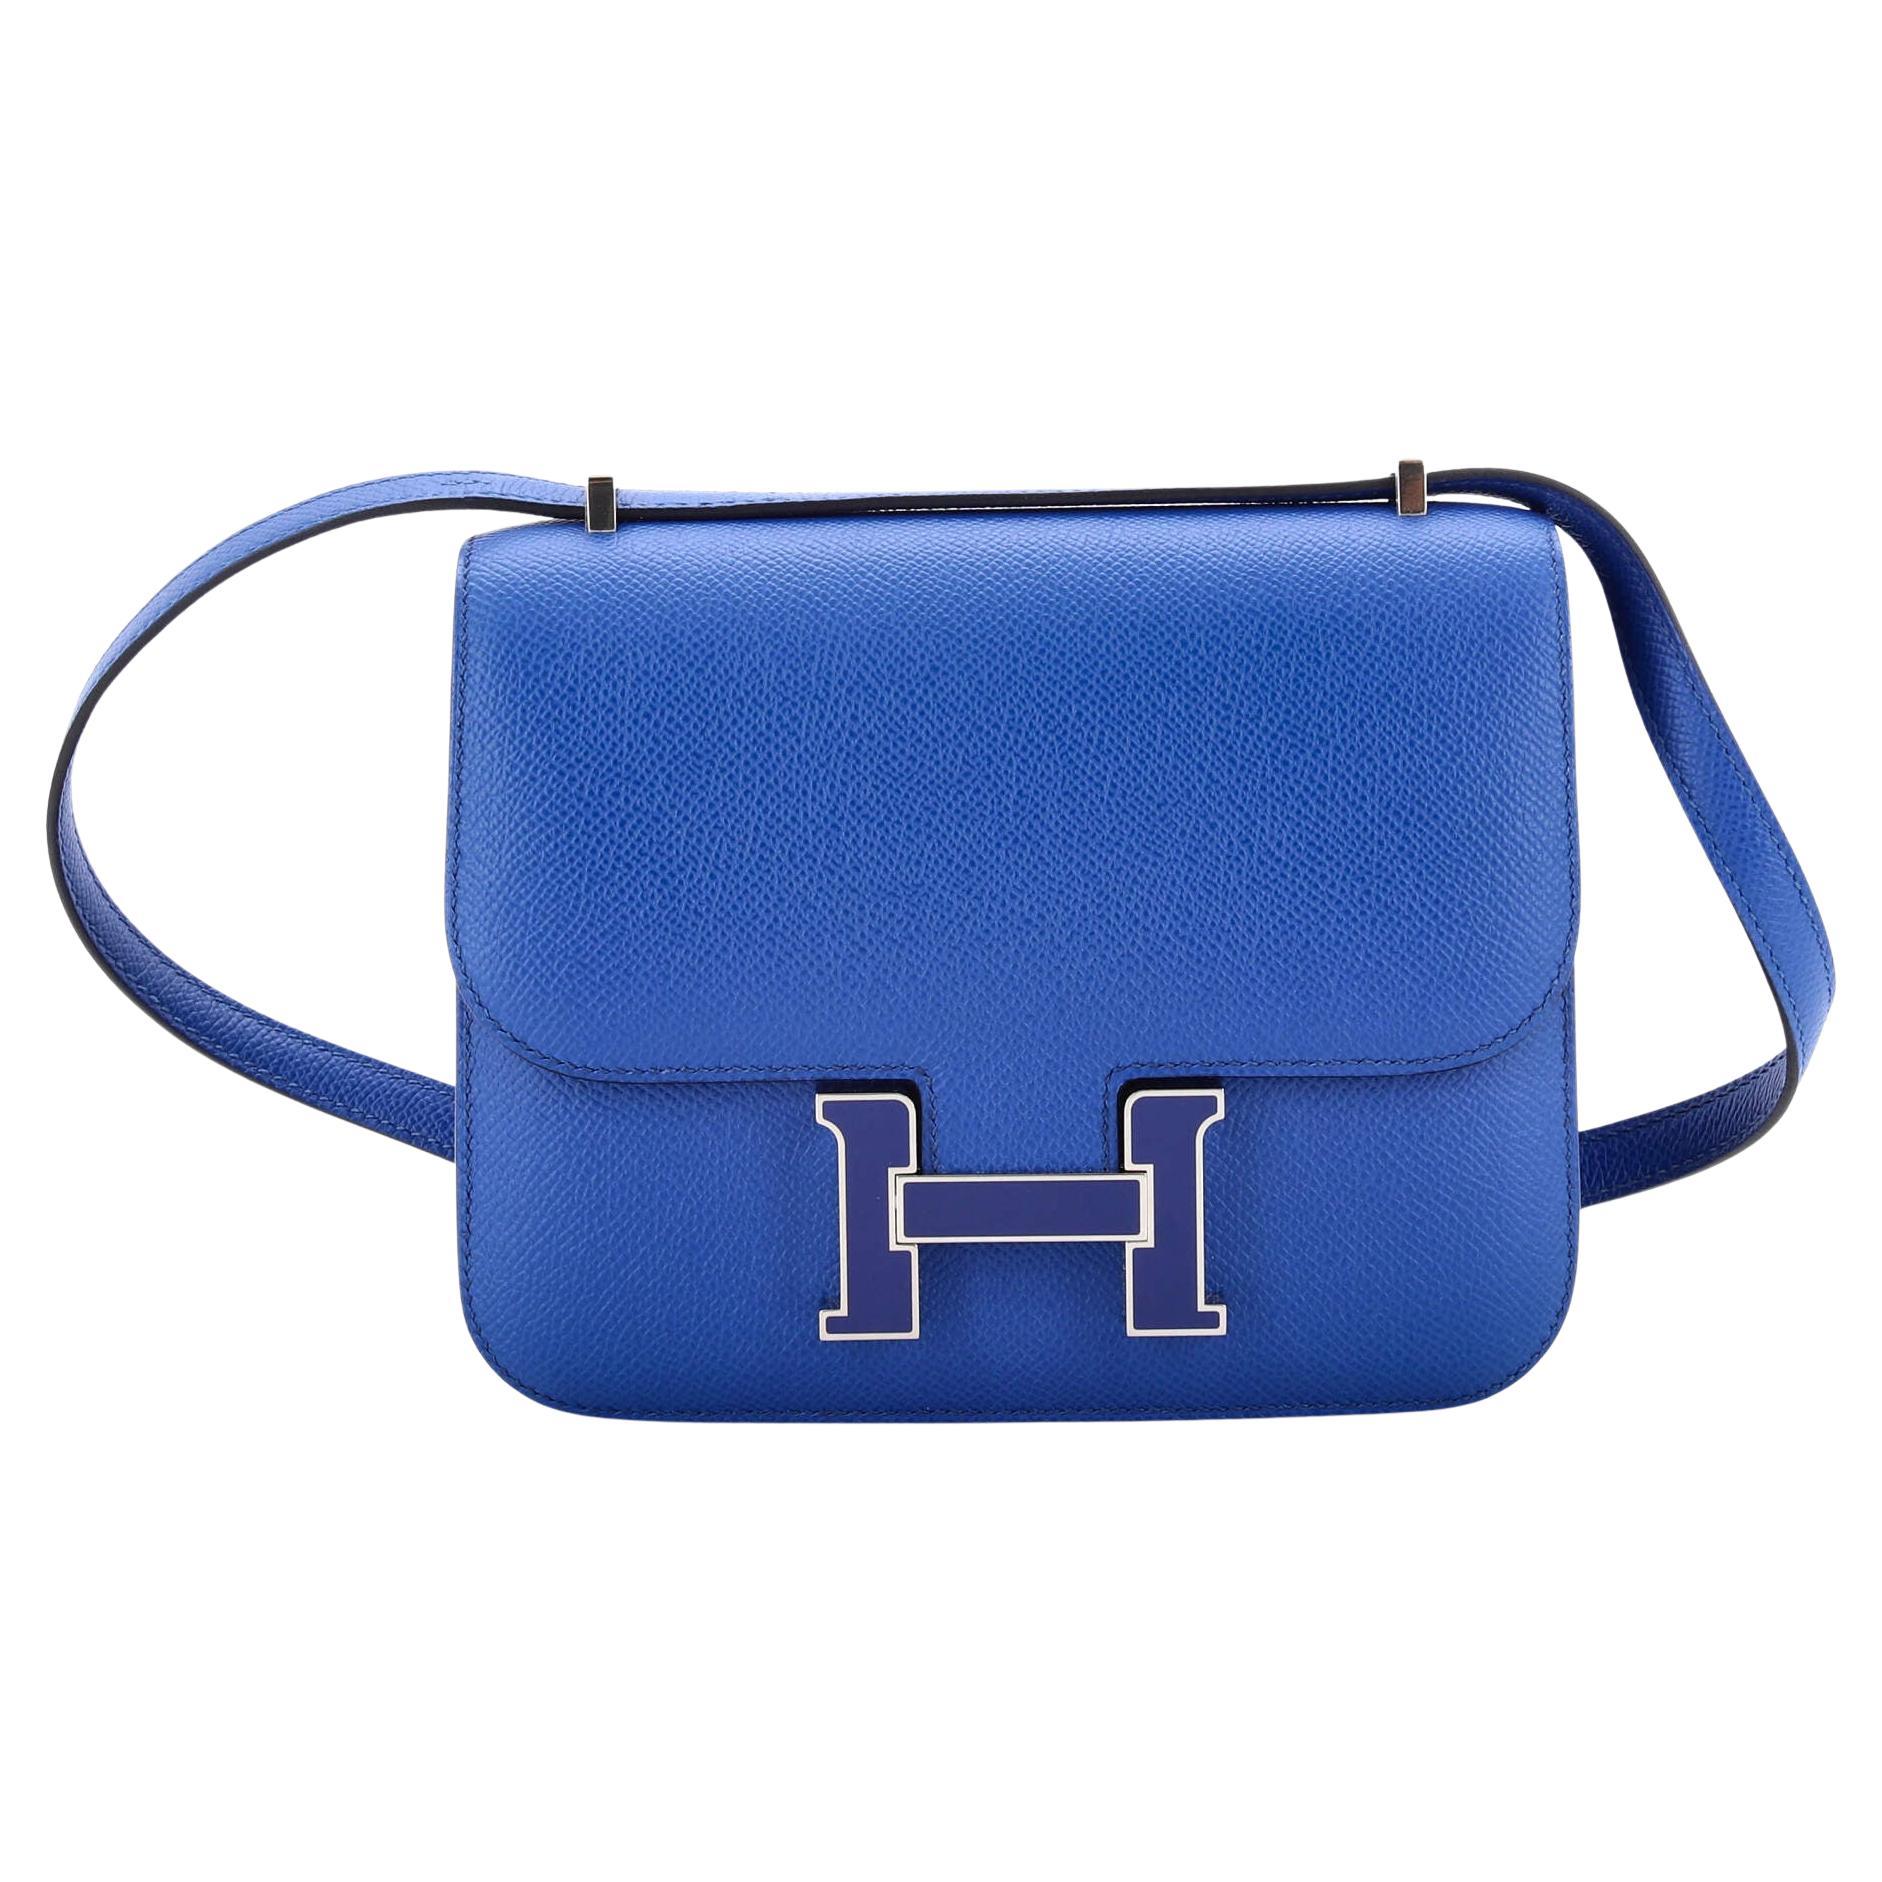 Amazing Hermes Constance 24 shoulder bag in Rouge de Coeur epsom leather,  GHW at 1stDibs